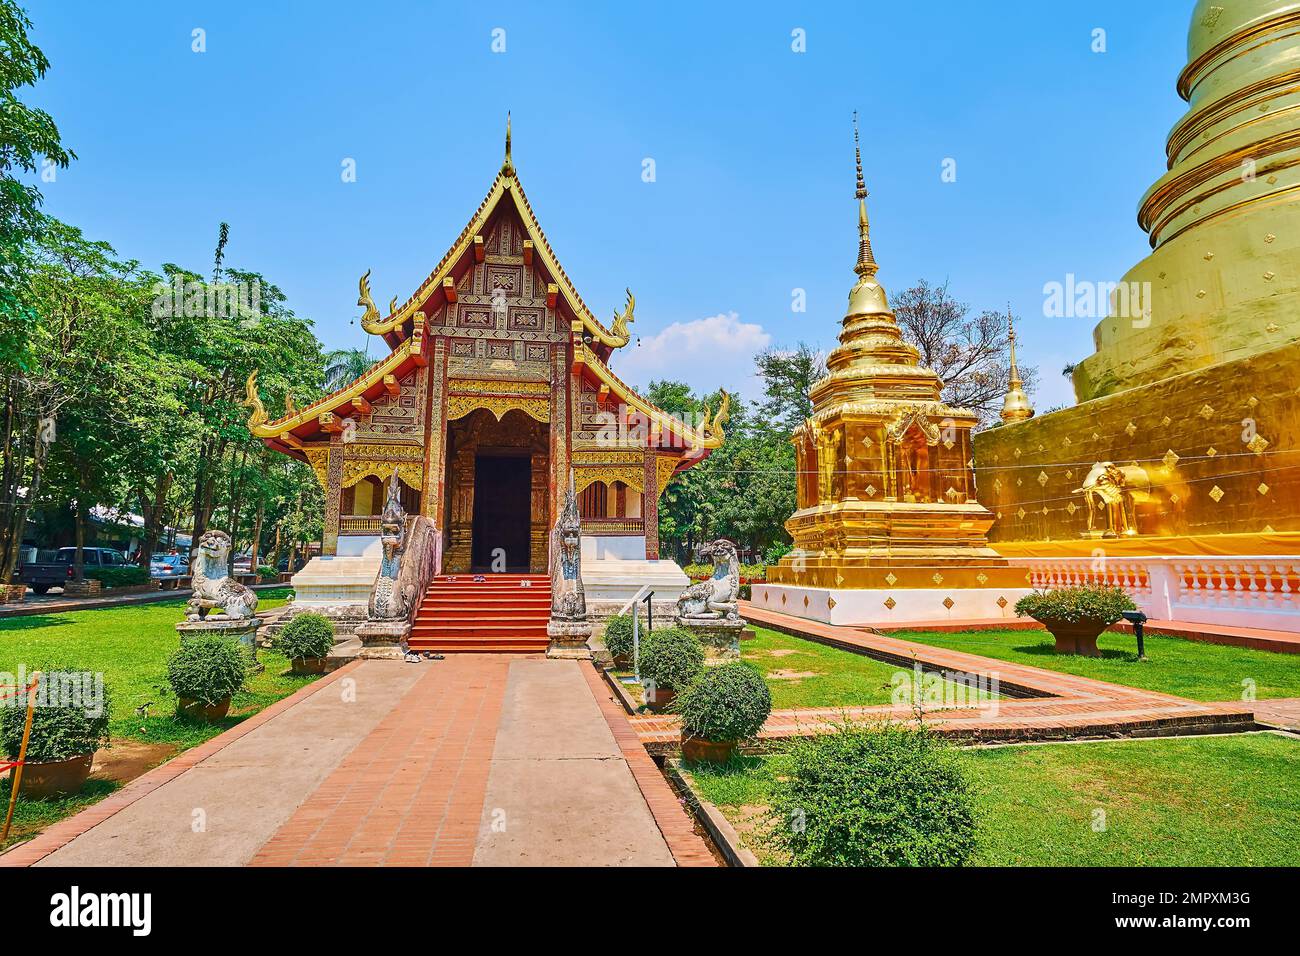 La facciata medievale in legno di stile Lanna Viharn Lai Kham e i chedis dorati di Wat Phra Singh, Chiang mai, Thailandia Foto Stock